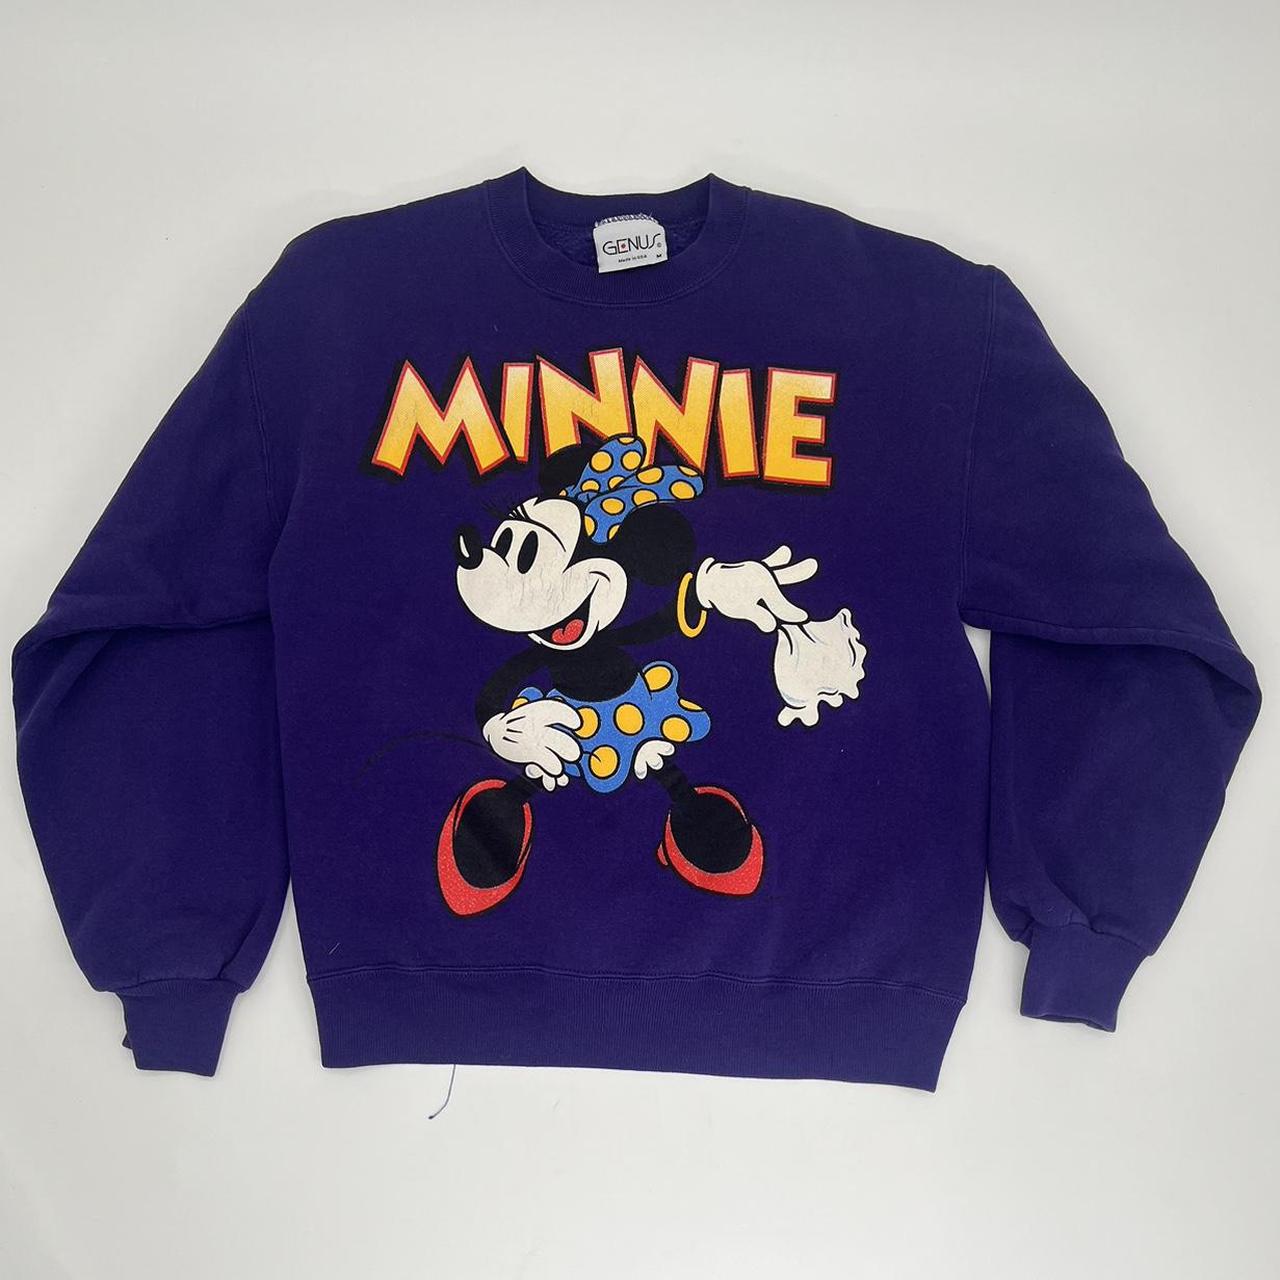 Vintage Disney Minnie Mouse Crewneck Unisex M... - Depop